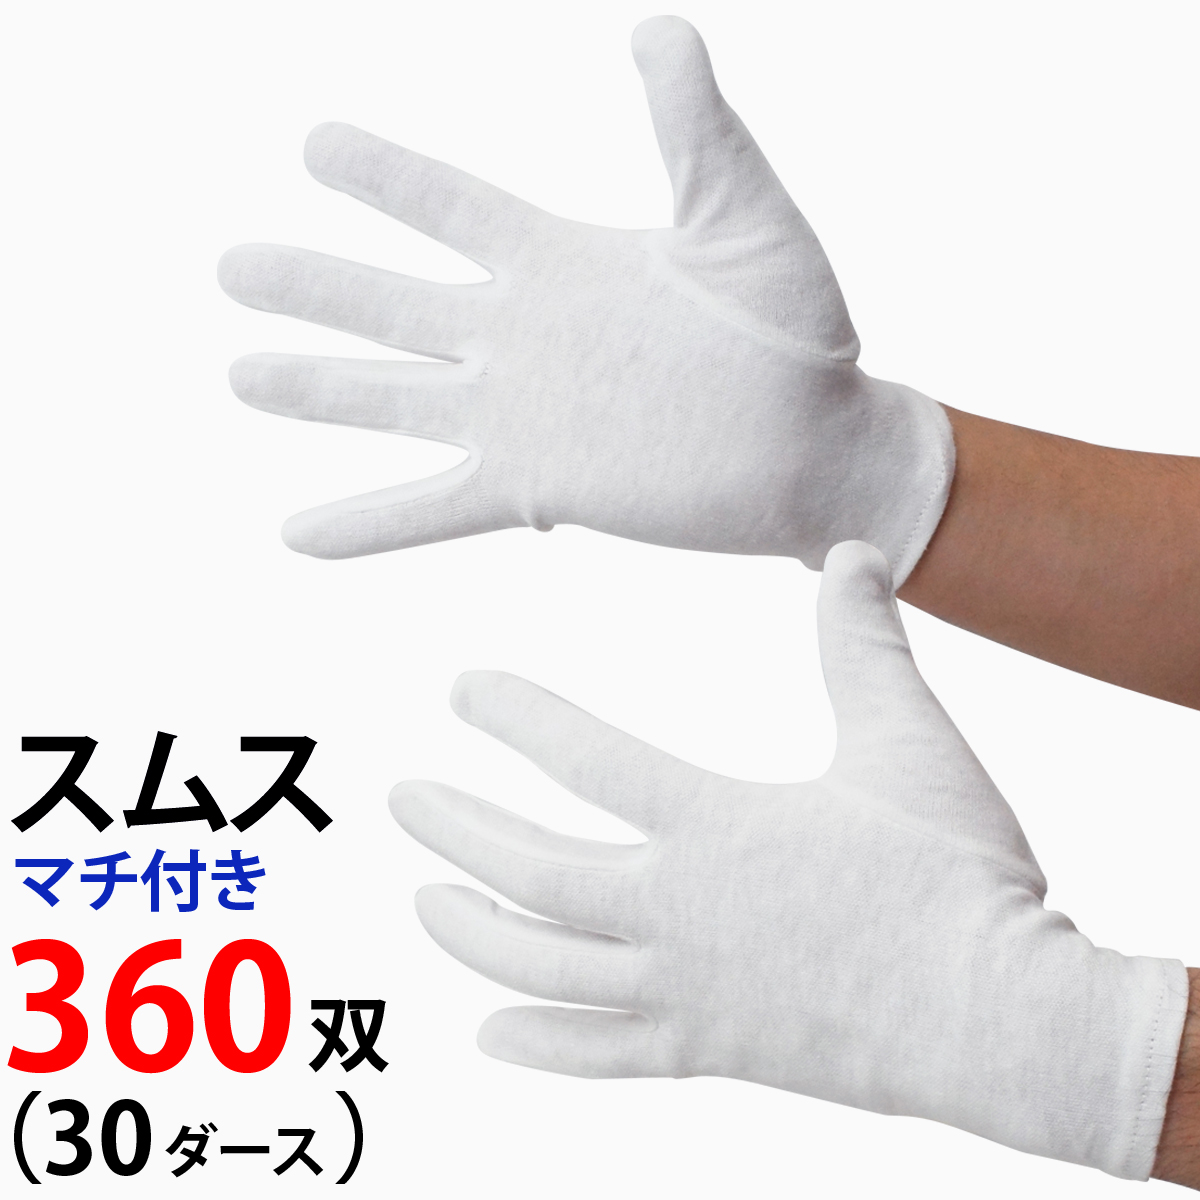 ⒉アスクル 品質管理用 綿スムス手袋 マチ無し(M)白手袋 2双 貴重品取扱い等